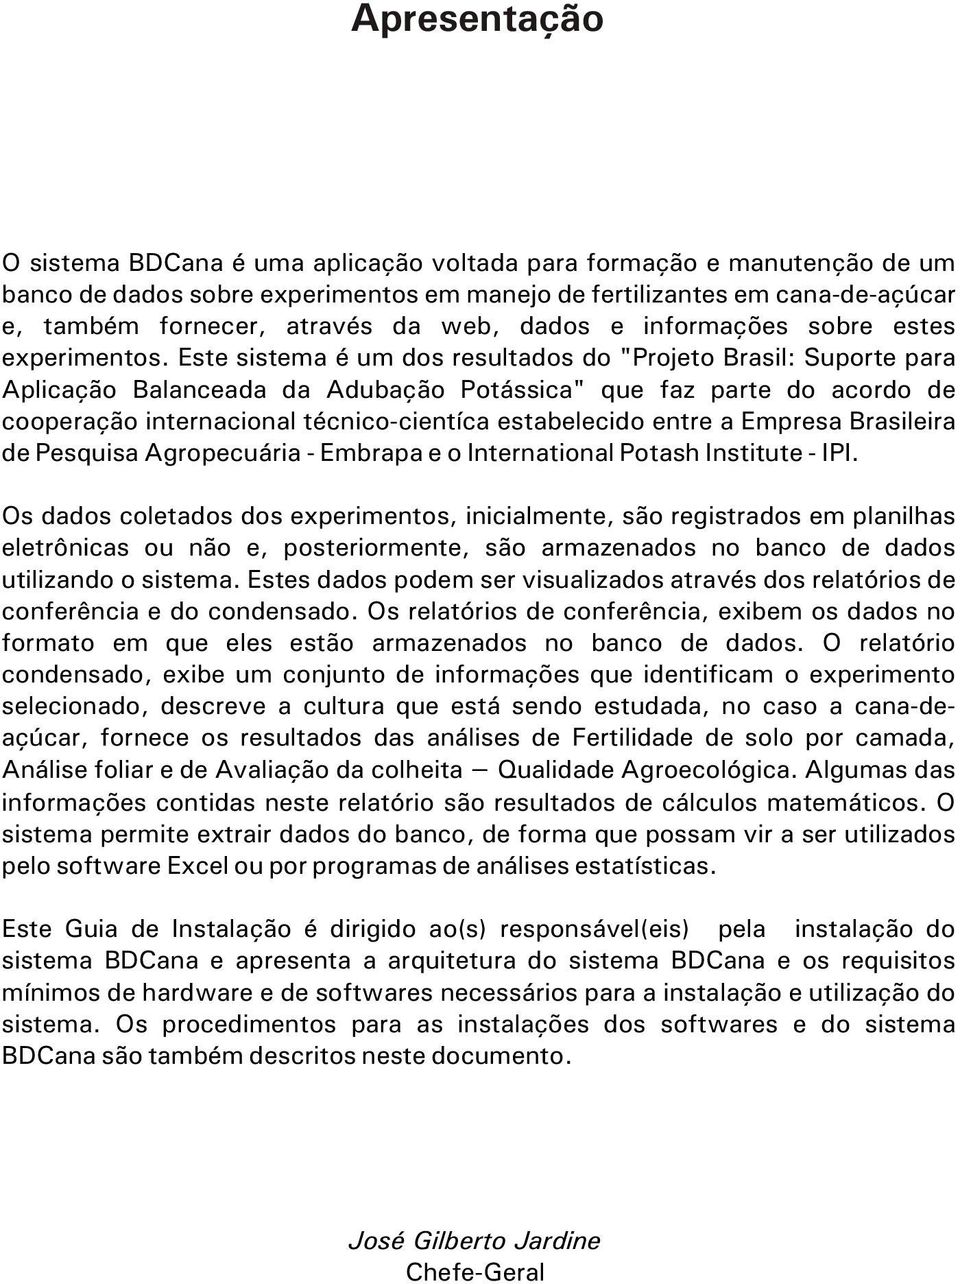 Este sistema é um dos resultados do "Projeto Brasil: Suporte para Aplicação Balanceada da Adubação Potássica" que faz parte do acordo de cooperação internacional técnico-cientíca estabelecido entre a